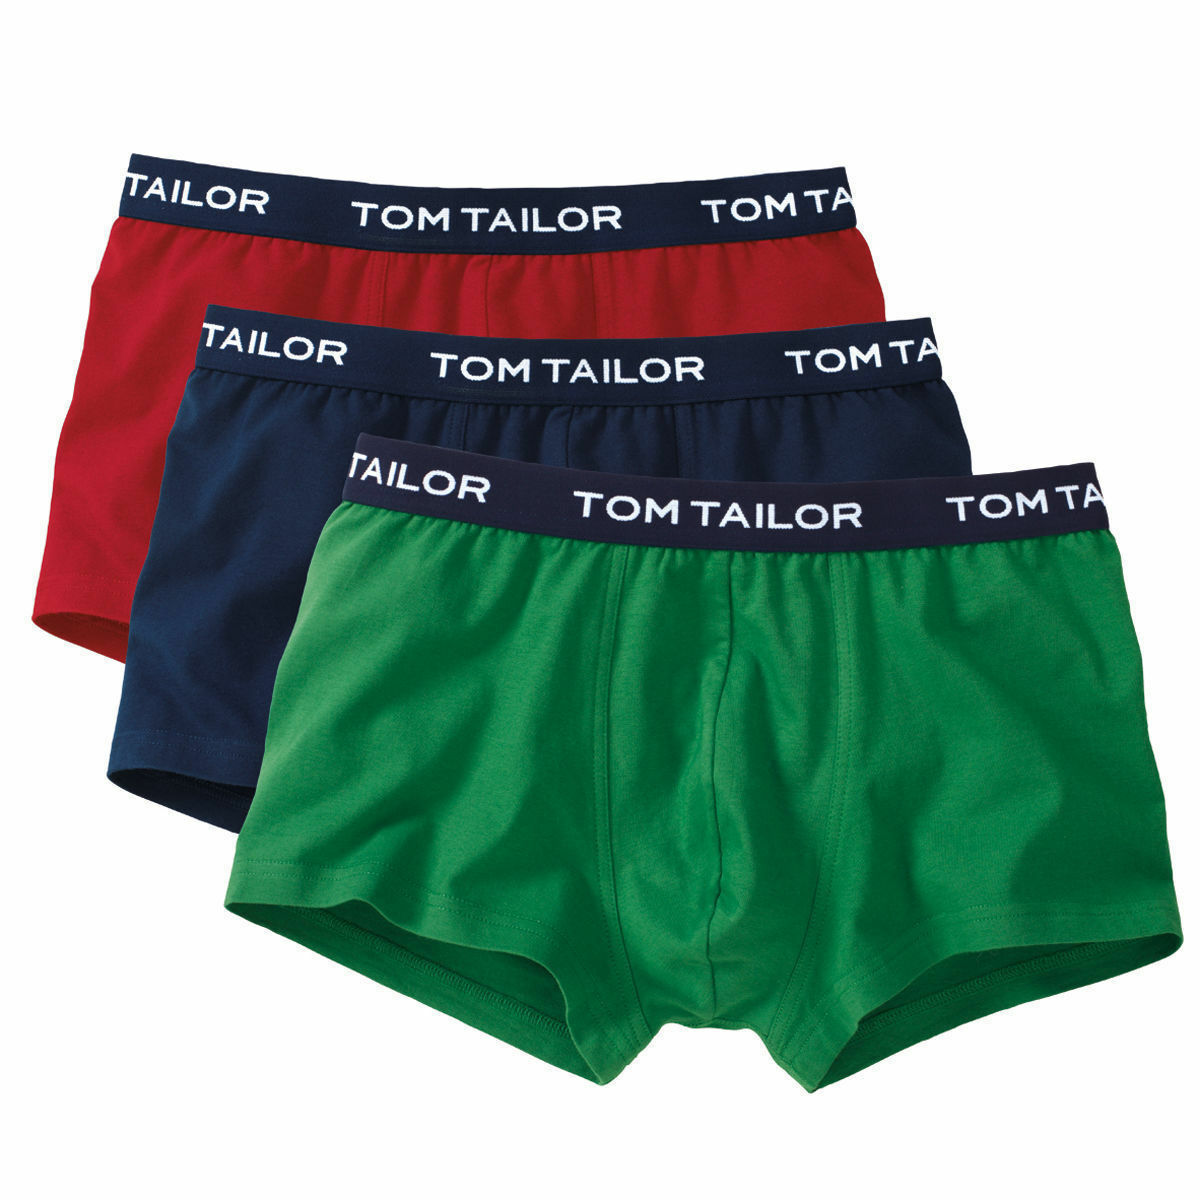 3 тома тейлора. Трусы Tom Tailor мужские. Мужские трусы слипы Tom Tailor. Tom Tailor боксеры. Том Тейлор трусы мужские.